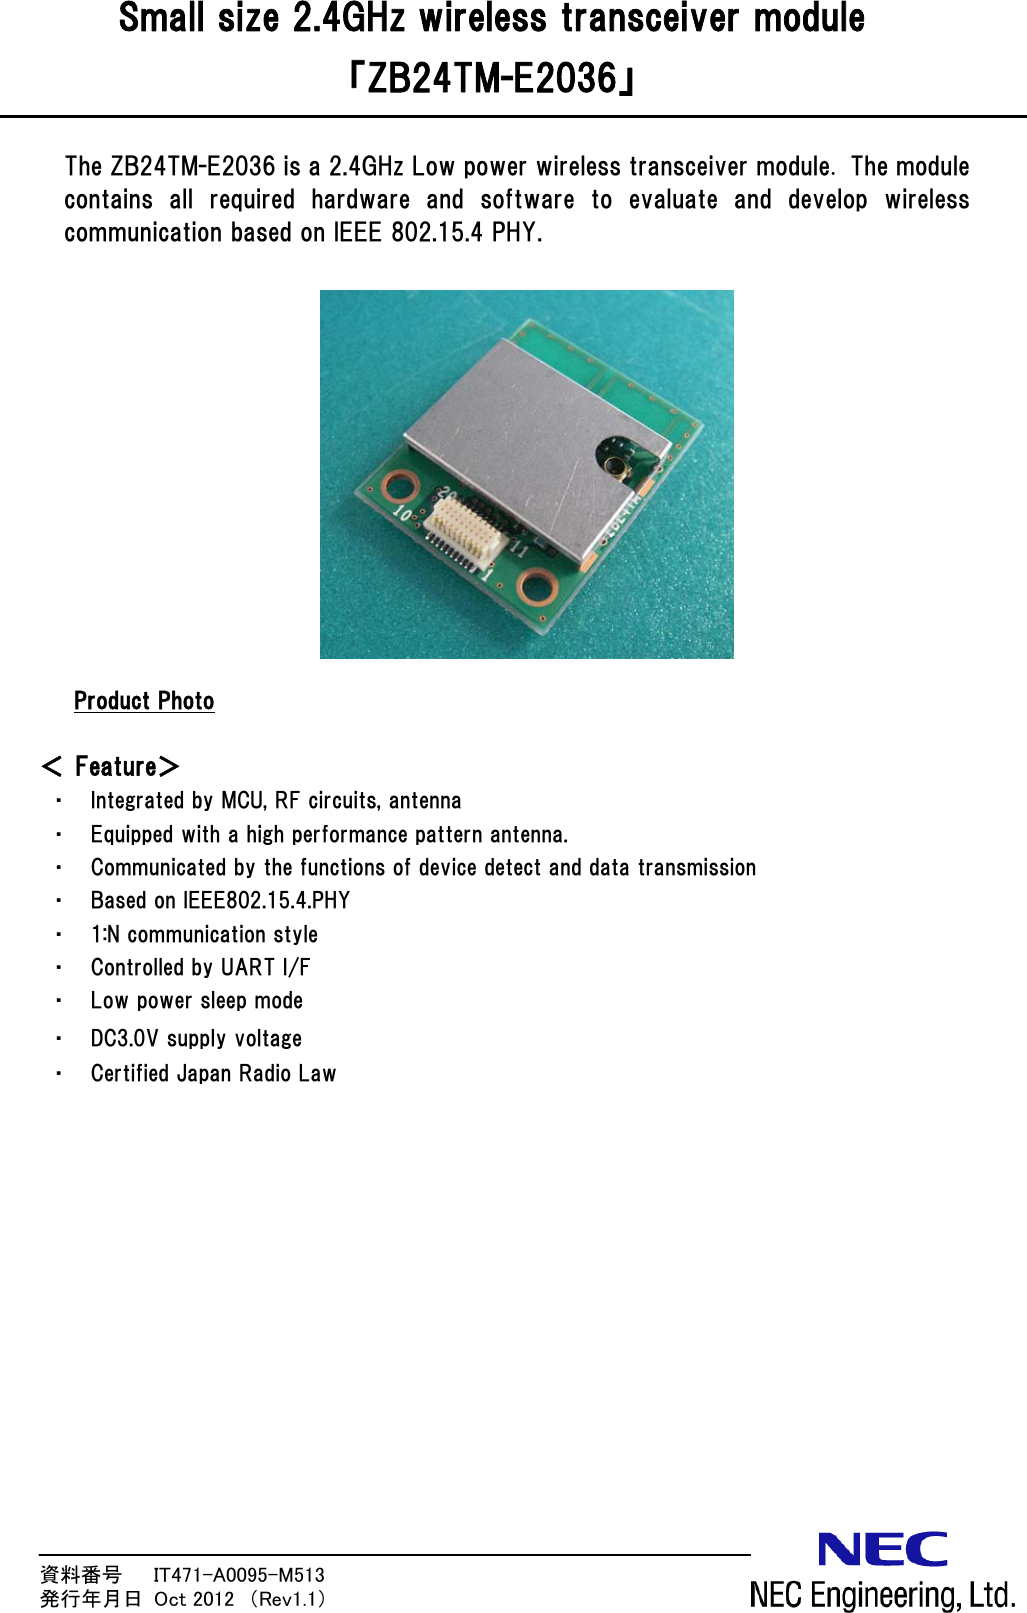 資料番号      IT471-A0095-M513                 発行年月日  Oct 2012  （Rev1.1） Small size 2.4GHz wireless transceiver module 「ZB24TM-E2036」  The ZB24TM-E2036 is a 2.4GHz Low power wireless transceiver module. The module contains  all  required  hardware  and  software  to  evaluate  and  develop  wireless communication based on IEEE 802.15.4 PHY.              UProduct Photo  ＜ Feature＞ ・ Integrated by MCU, RF circuits, antenna ・ Equipped with a high performance pattern antenna. ・ Communicated by the functions of device detect and data transmission ・ Based on IEEE802.15.4.PHY ・ 1:N communication style ・ Controlled by UART I/F ・ Low power sleep mode ・ DC3.0V supply voltage ・ Certified Japan Radio Law  